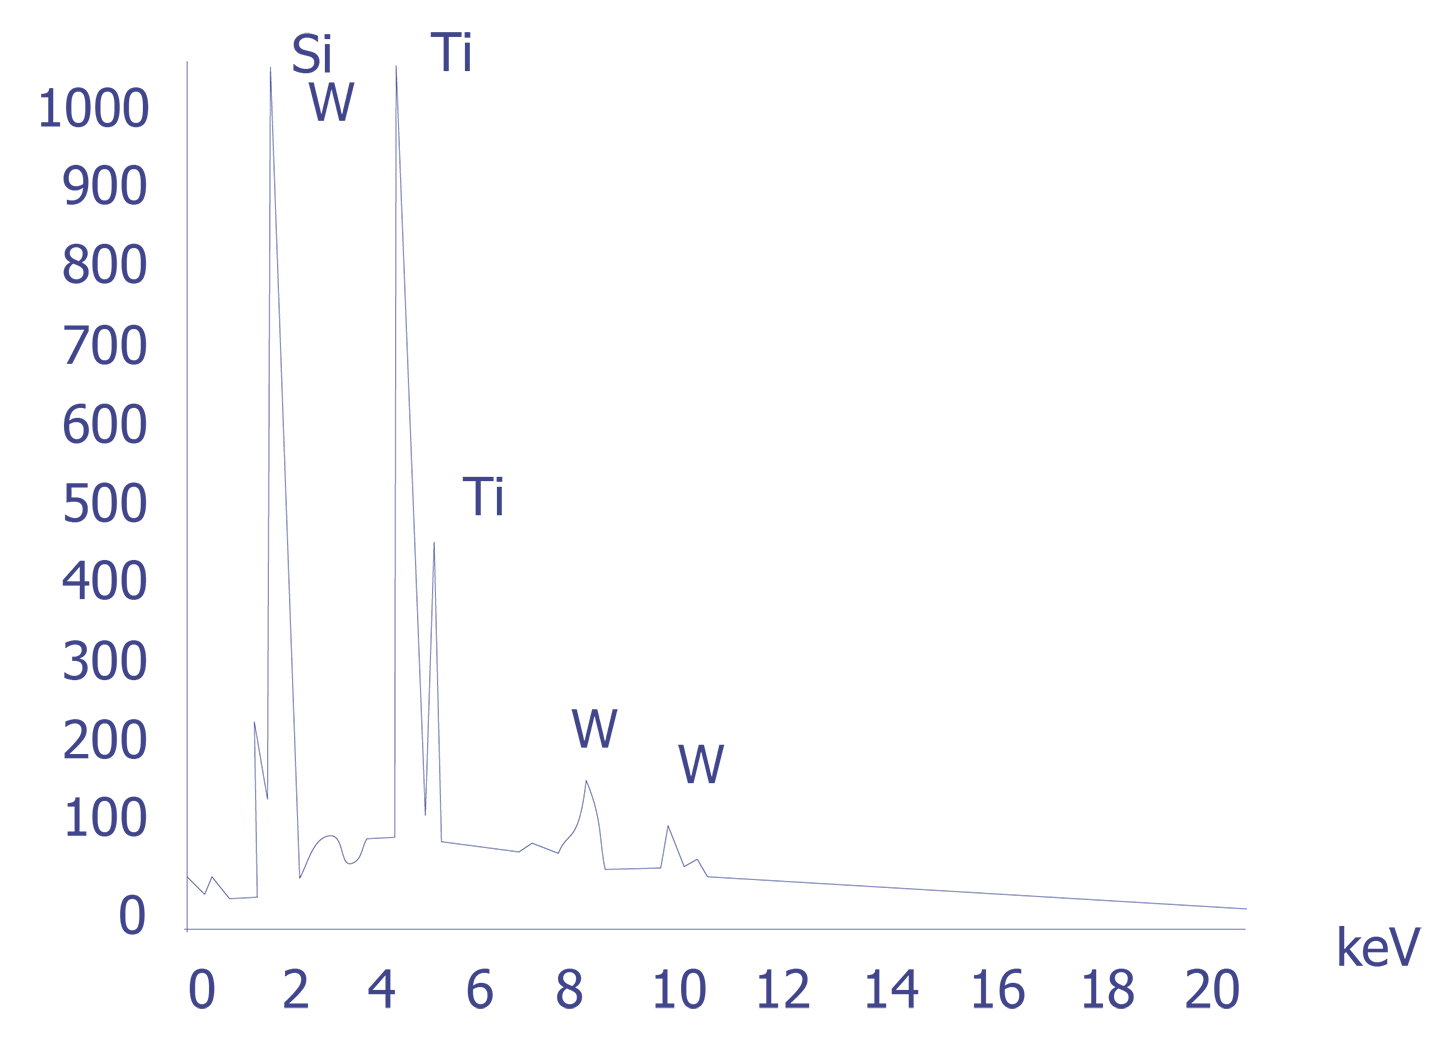 EDS spectrum for a titanium-tungsten particle.